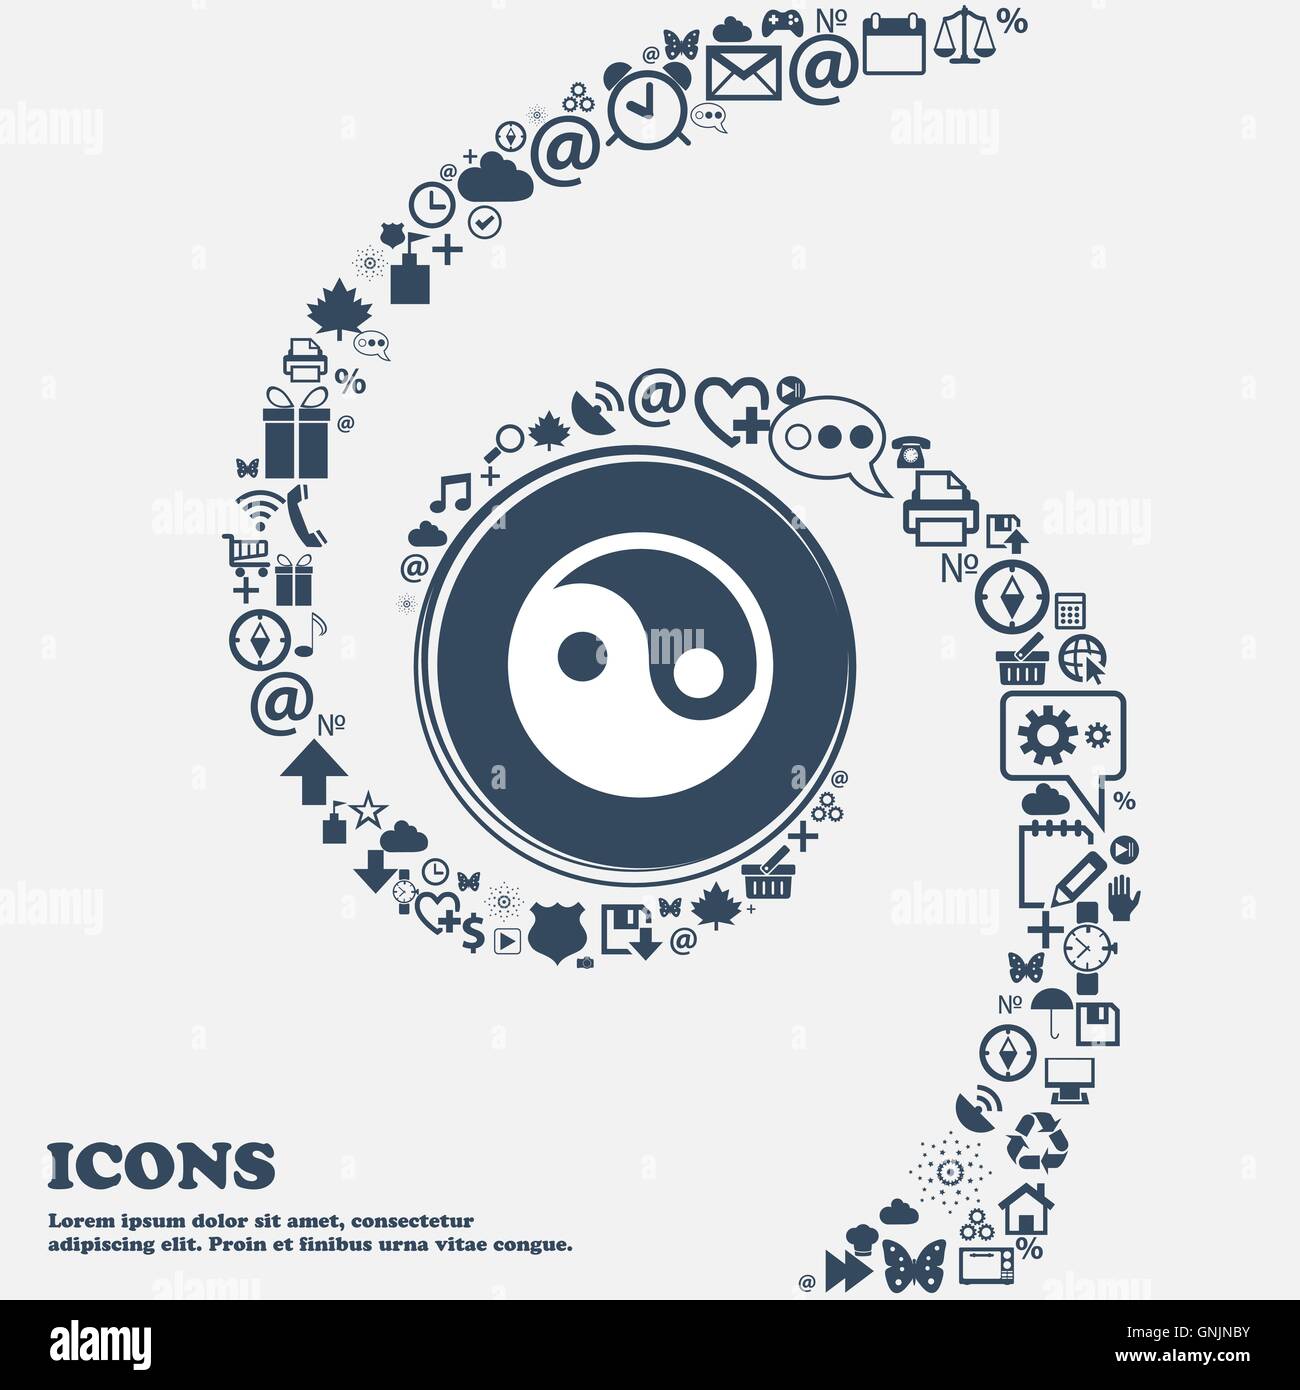 Ying Yang Symbol Zeichen in der Mitte. Um die vielen schönen Symbole in einer Spirale gewickelt. Sie können jeweils separat für Ihr d Stock Vektor